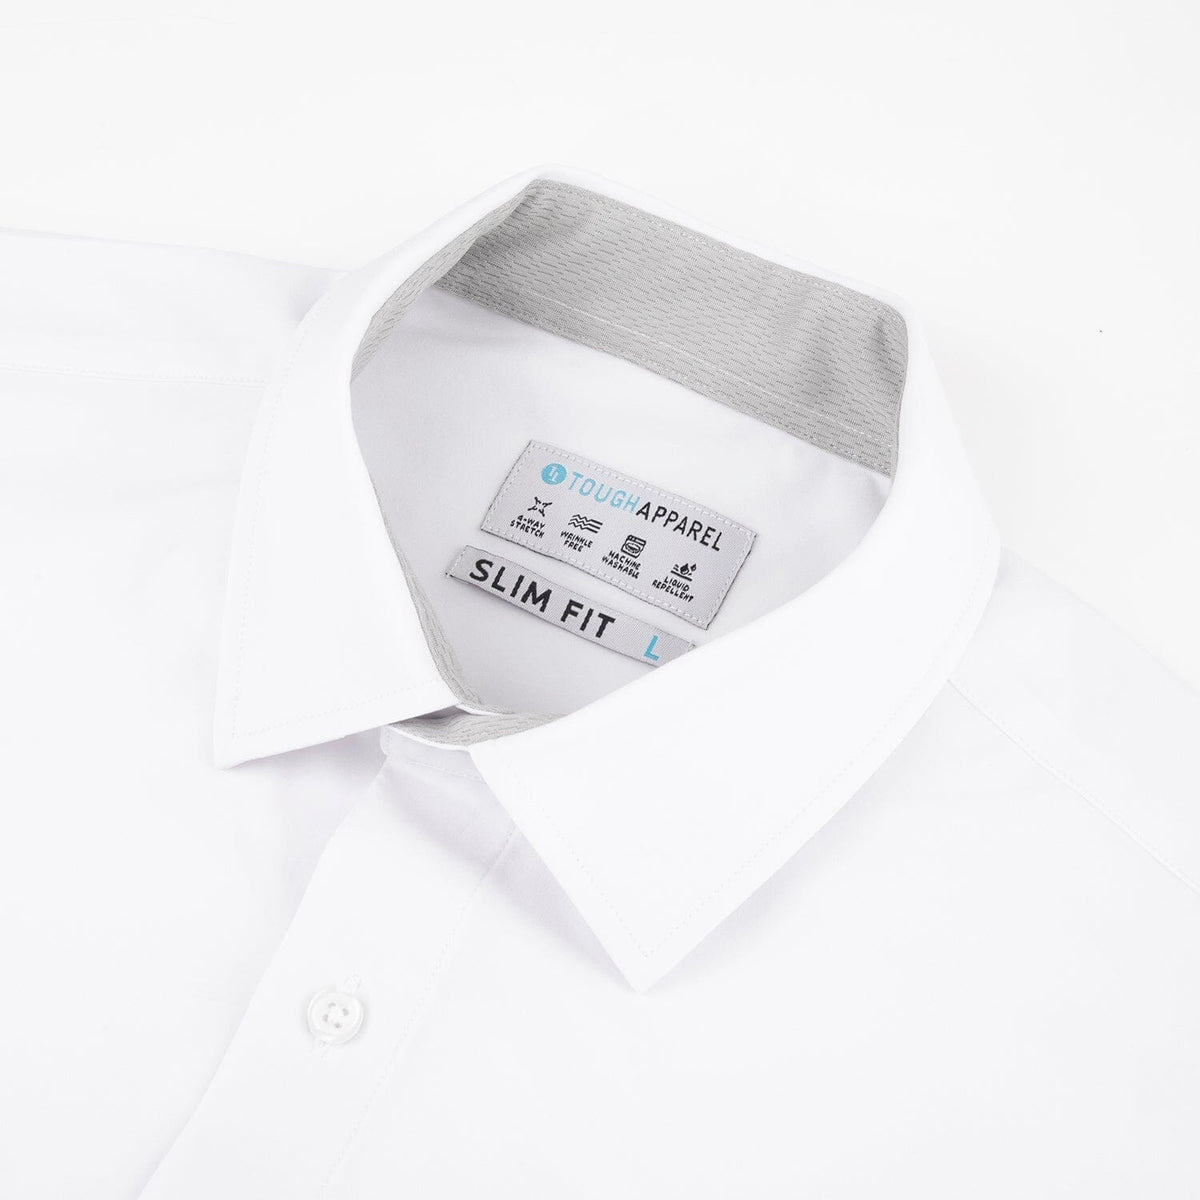 Hustle Shirt - SLIM Fit - White - Tough Apparel